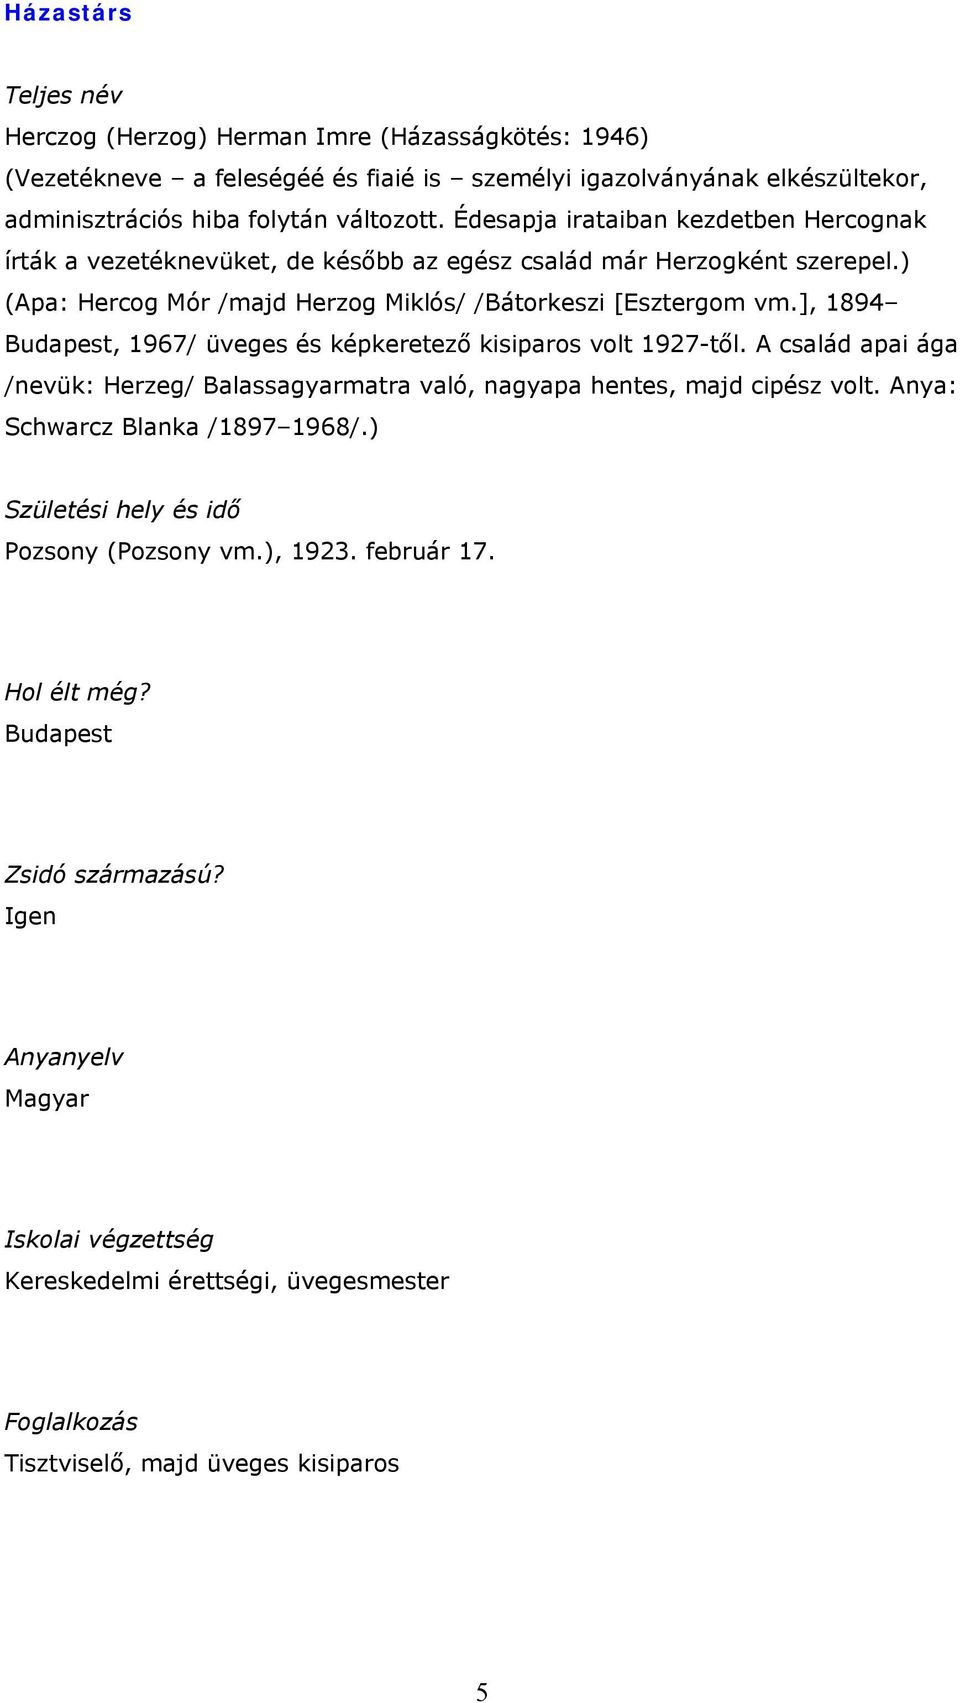 ], 1894 Budapest, 1967/ üveges és képkeretező kisiparos volt 1927-től. A család apai ága /nevük: Herzeg/ Balassagyarmatra való, nagyapa hentes, majd cipész volt. Anya: Schwarcz Blanka /1897 1968/.